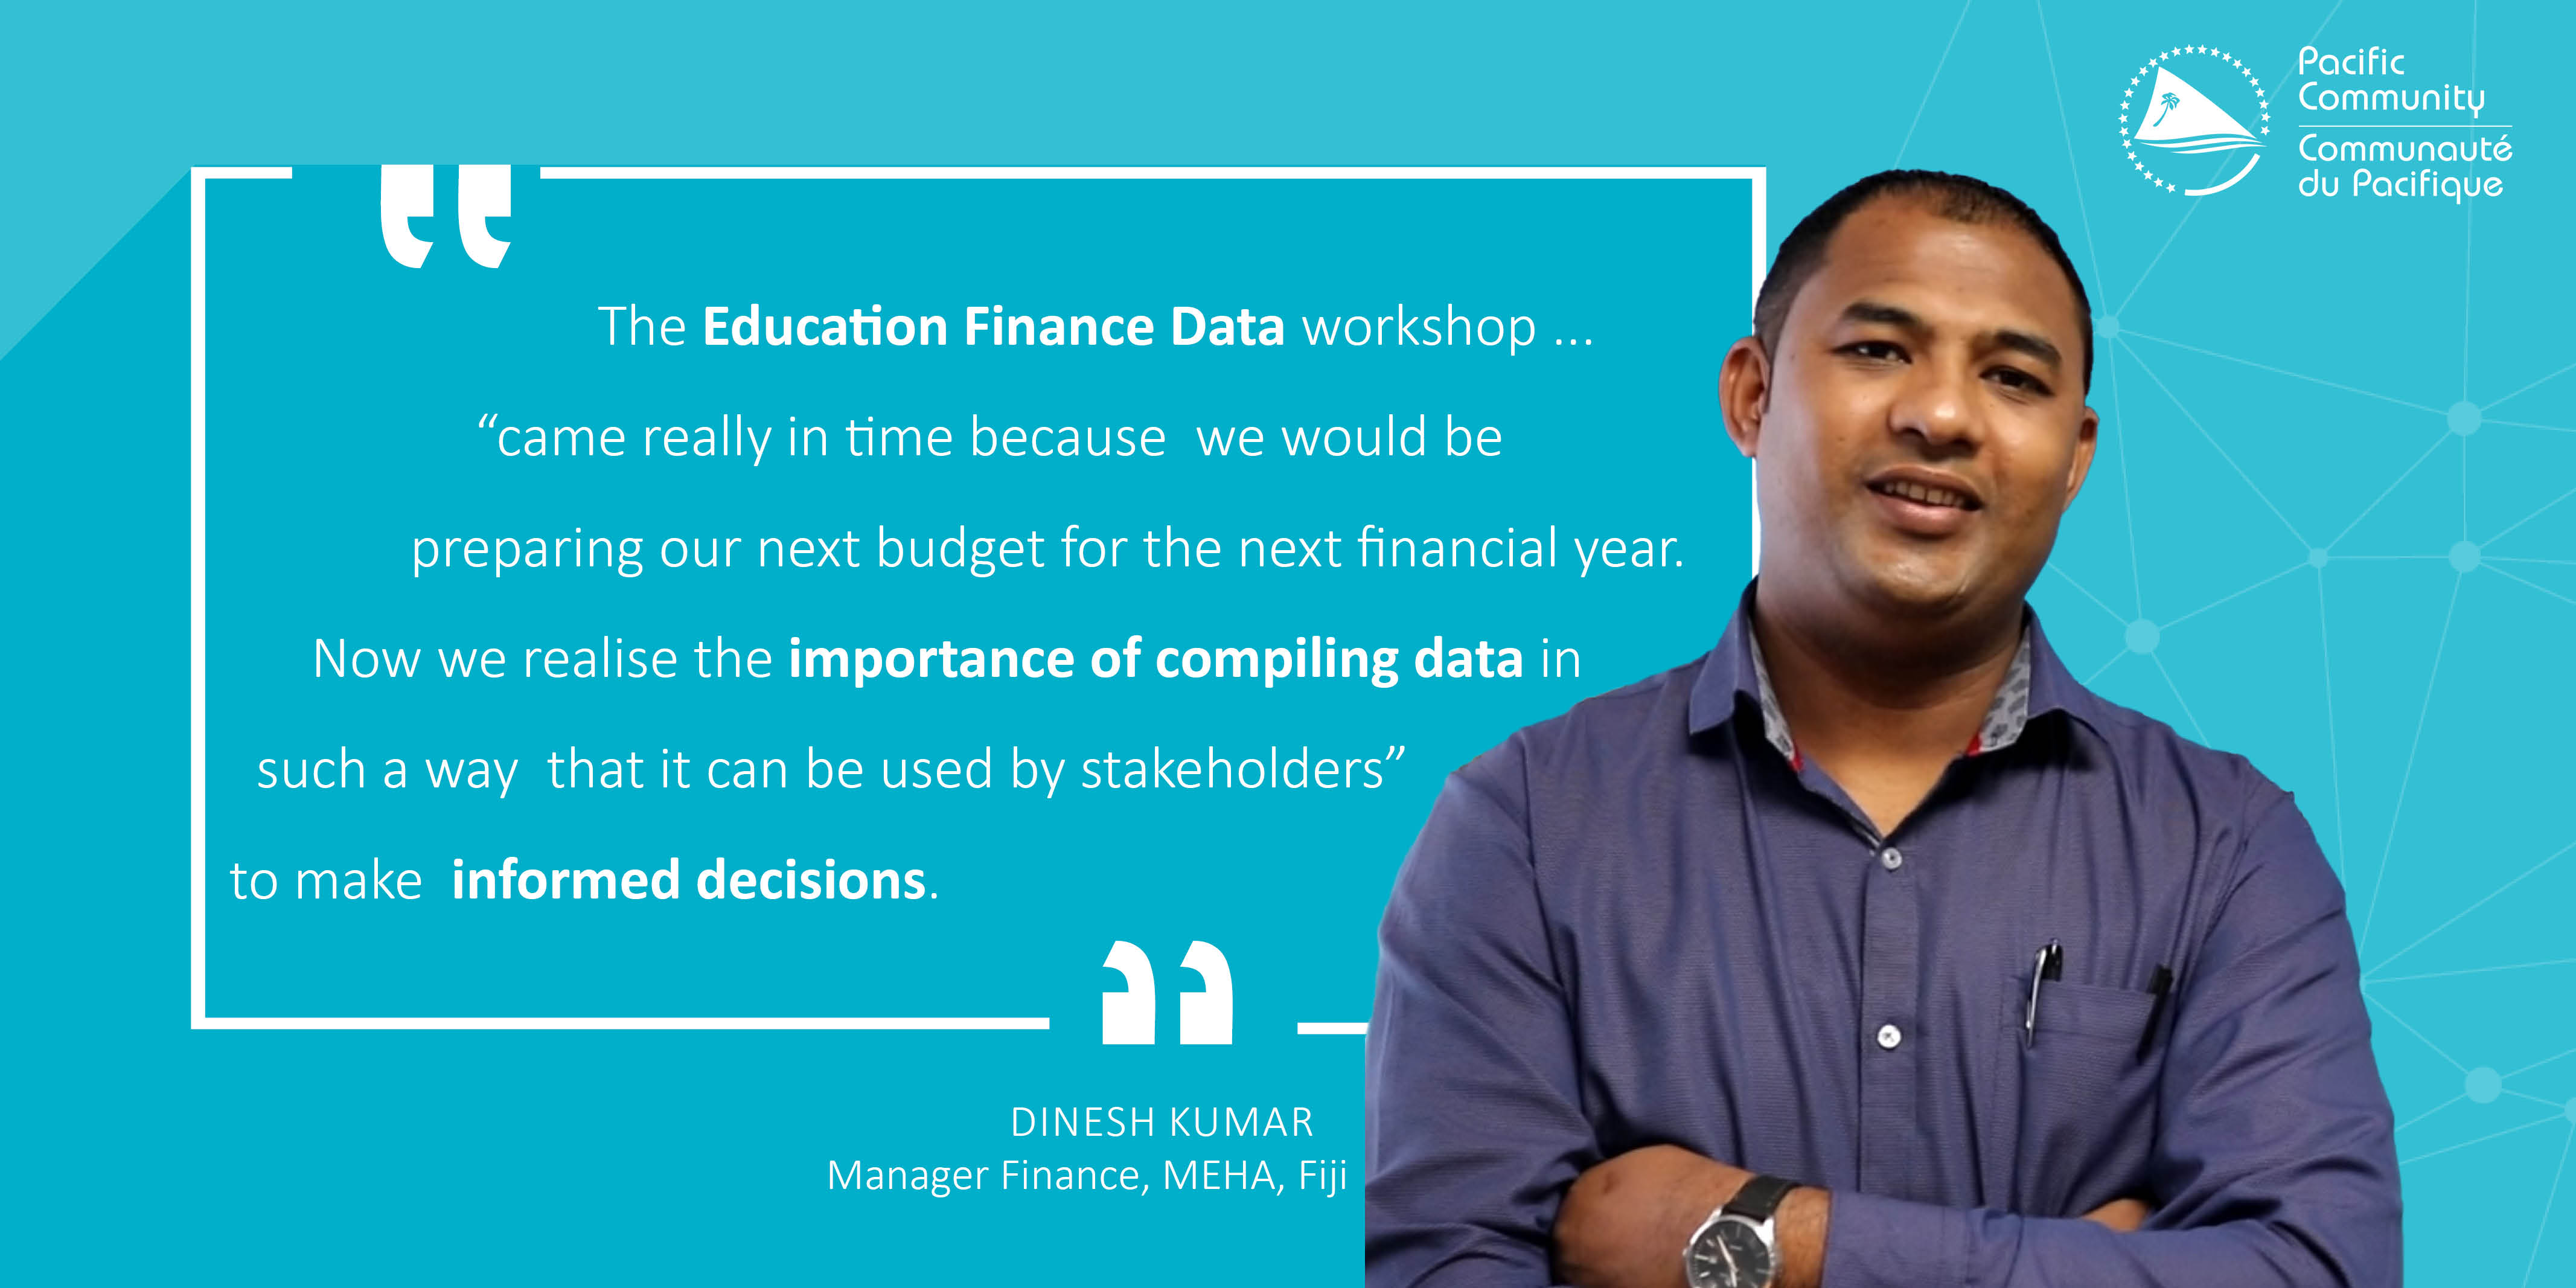 Dinesh Kumar, Manager Finance, Meha, Fiji